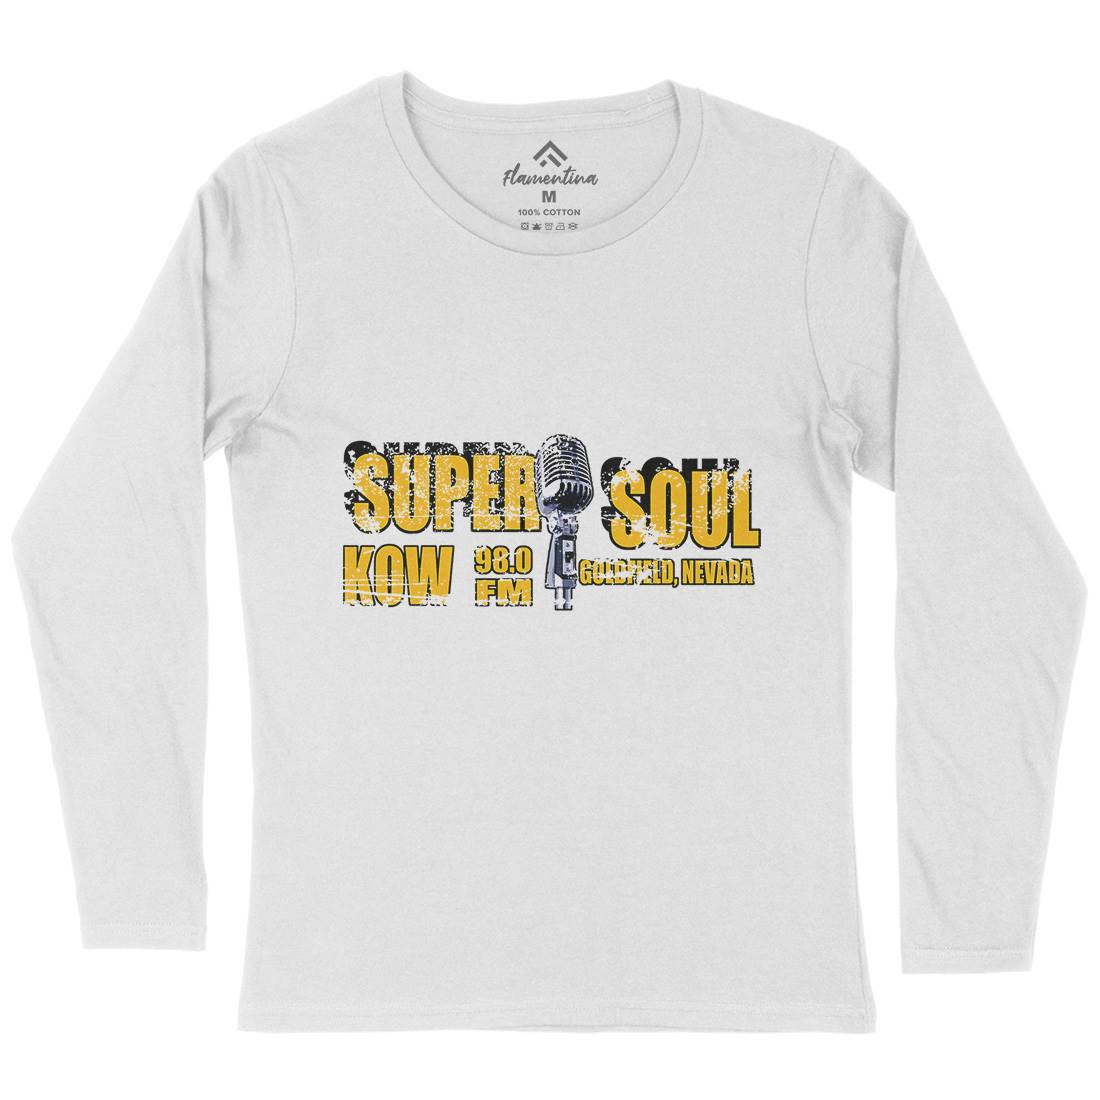 Super Soul Womens Long Sleeve T-Shirt Music D392